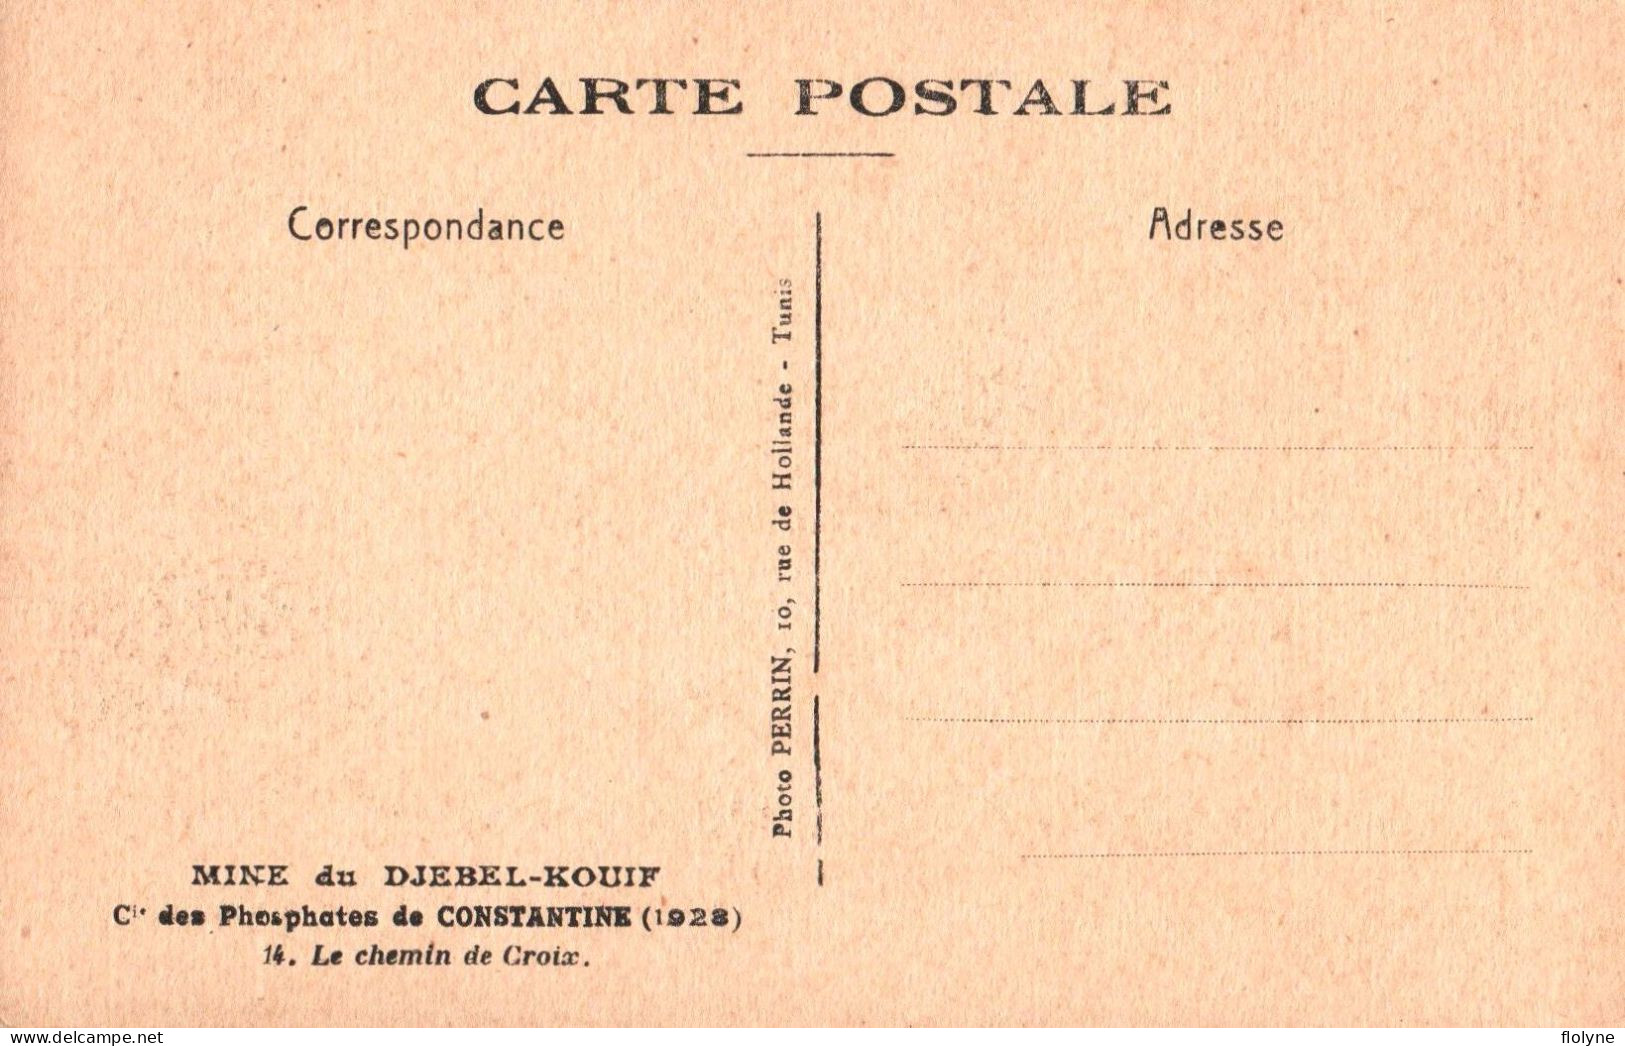 constantine - série de 17 cpa - Mine du DJEBEL KOUIF , compagnie des phosphates - 1928 - algérie algeria